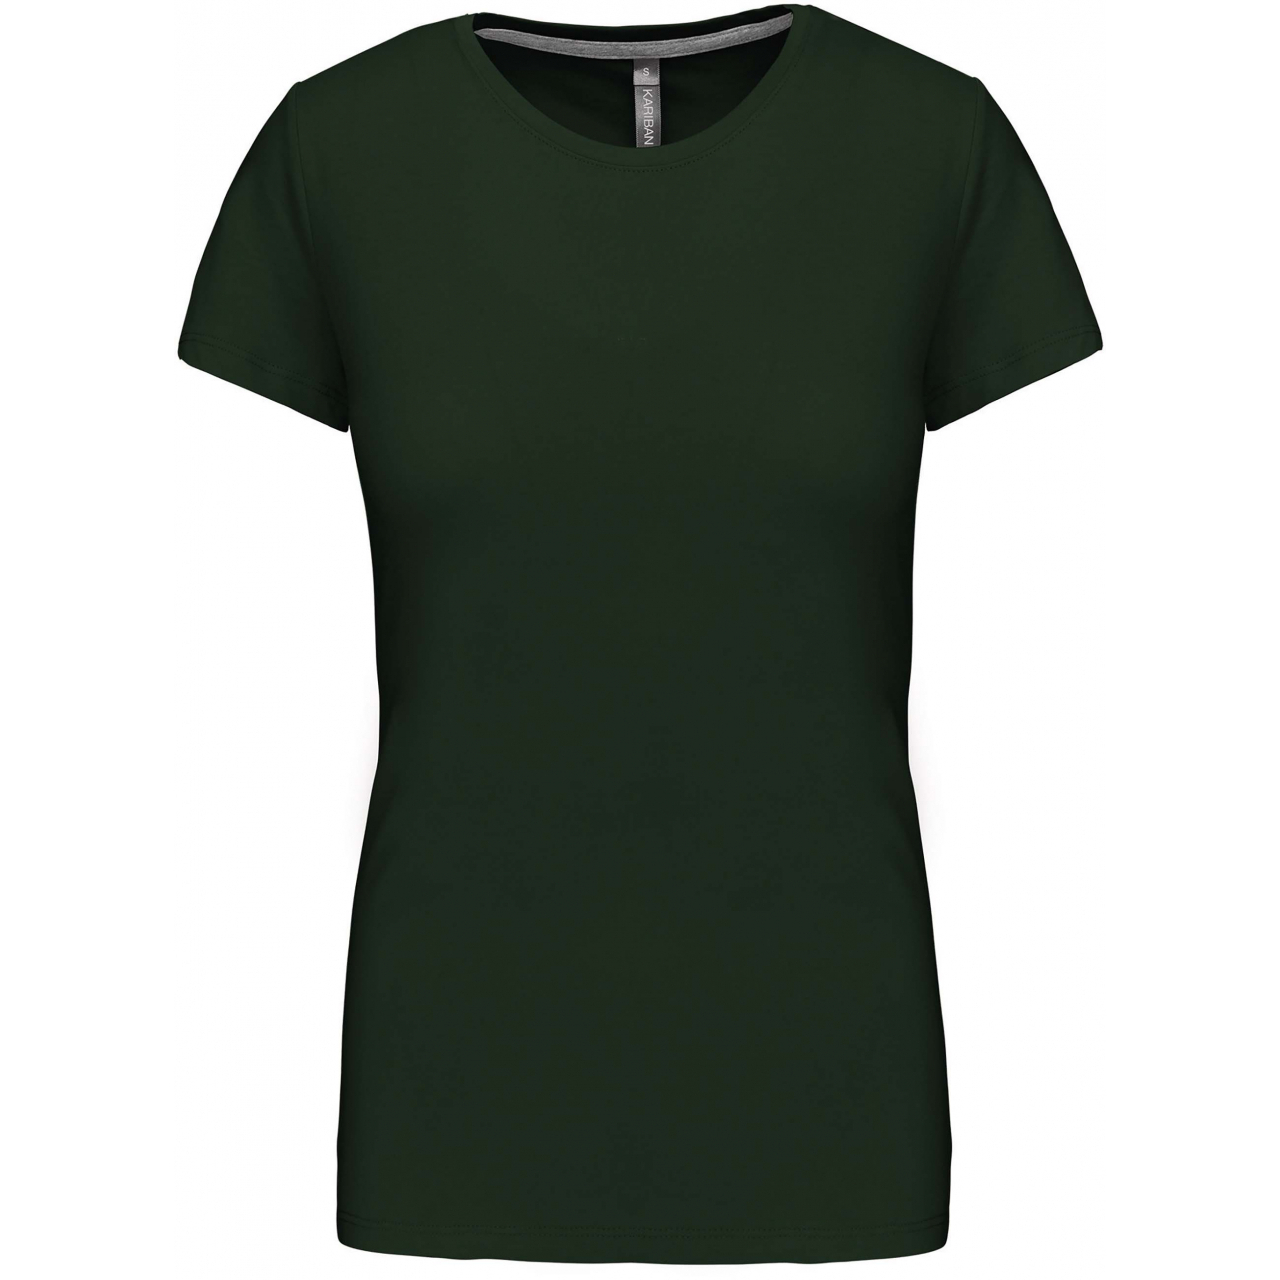 Dámské tričko Kariban s krátkým rukávem - tmavě zelené, XXL